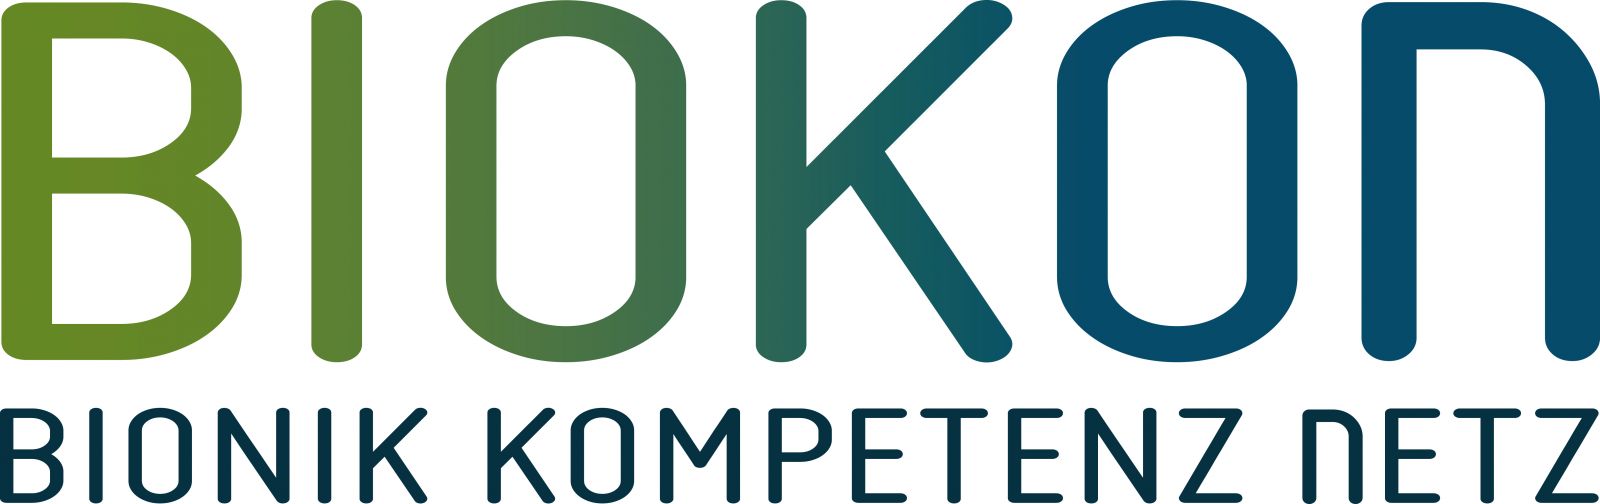 biokon logo